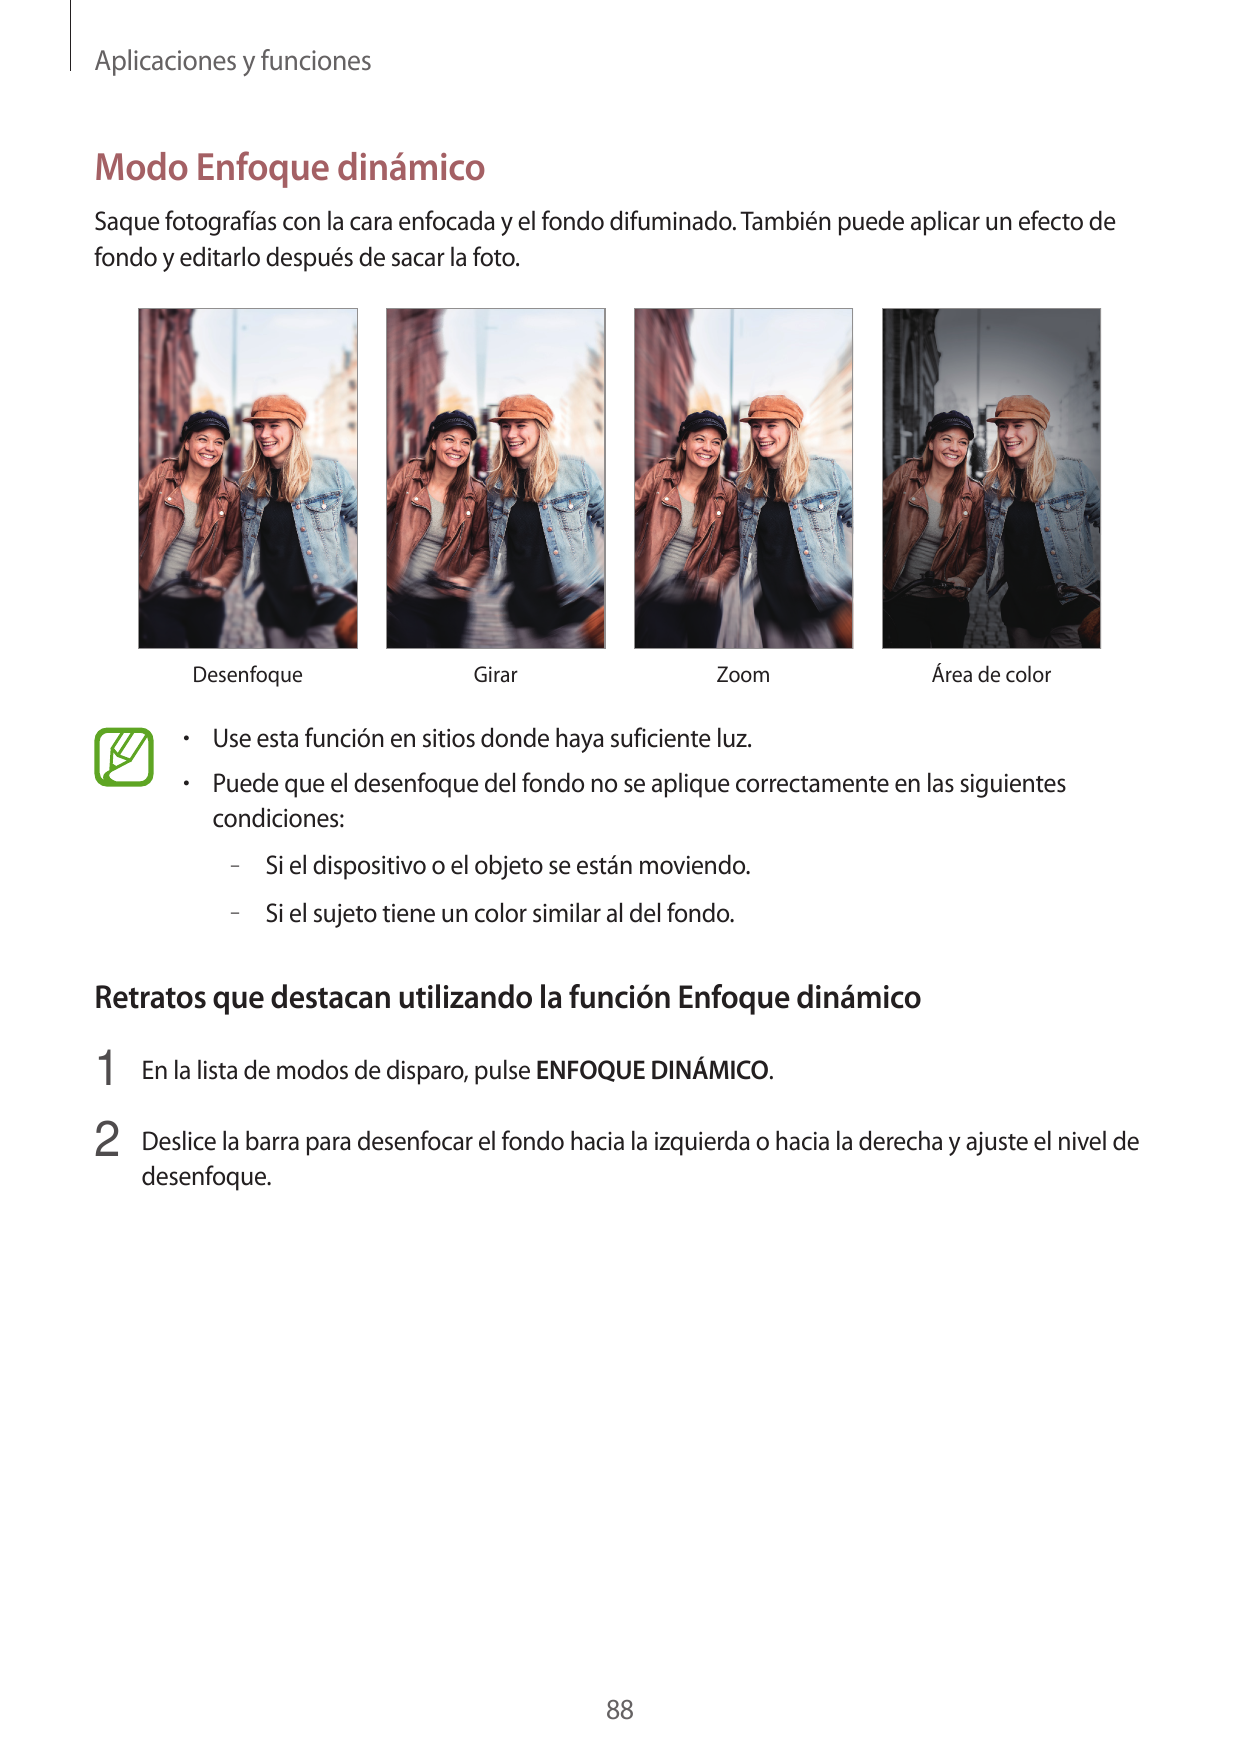 Aplicaciones y funcionesModo Enfoque dinámicoSaque fotografías con la cara enfocada y el fondo difuminado. También puede aplicar